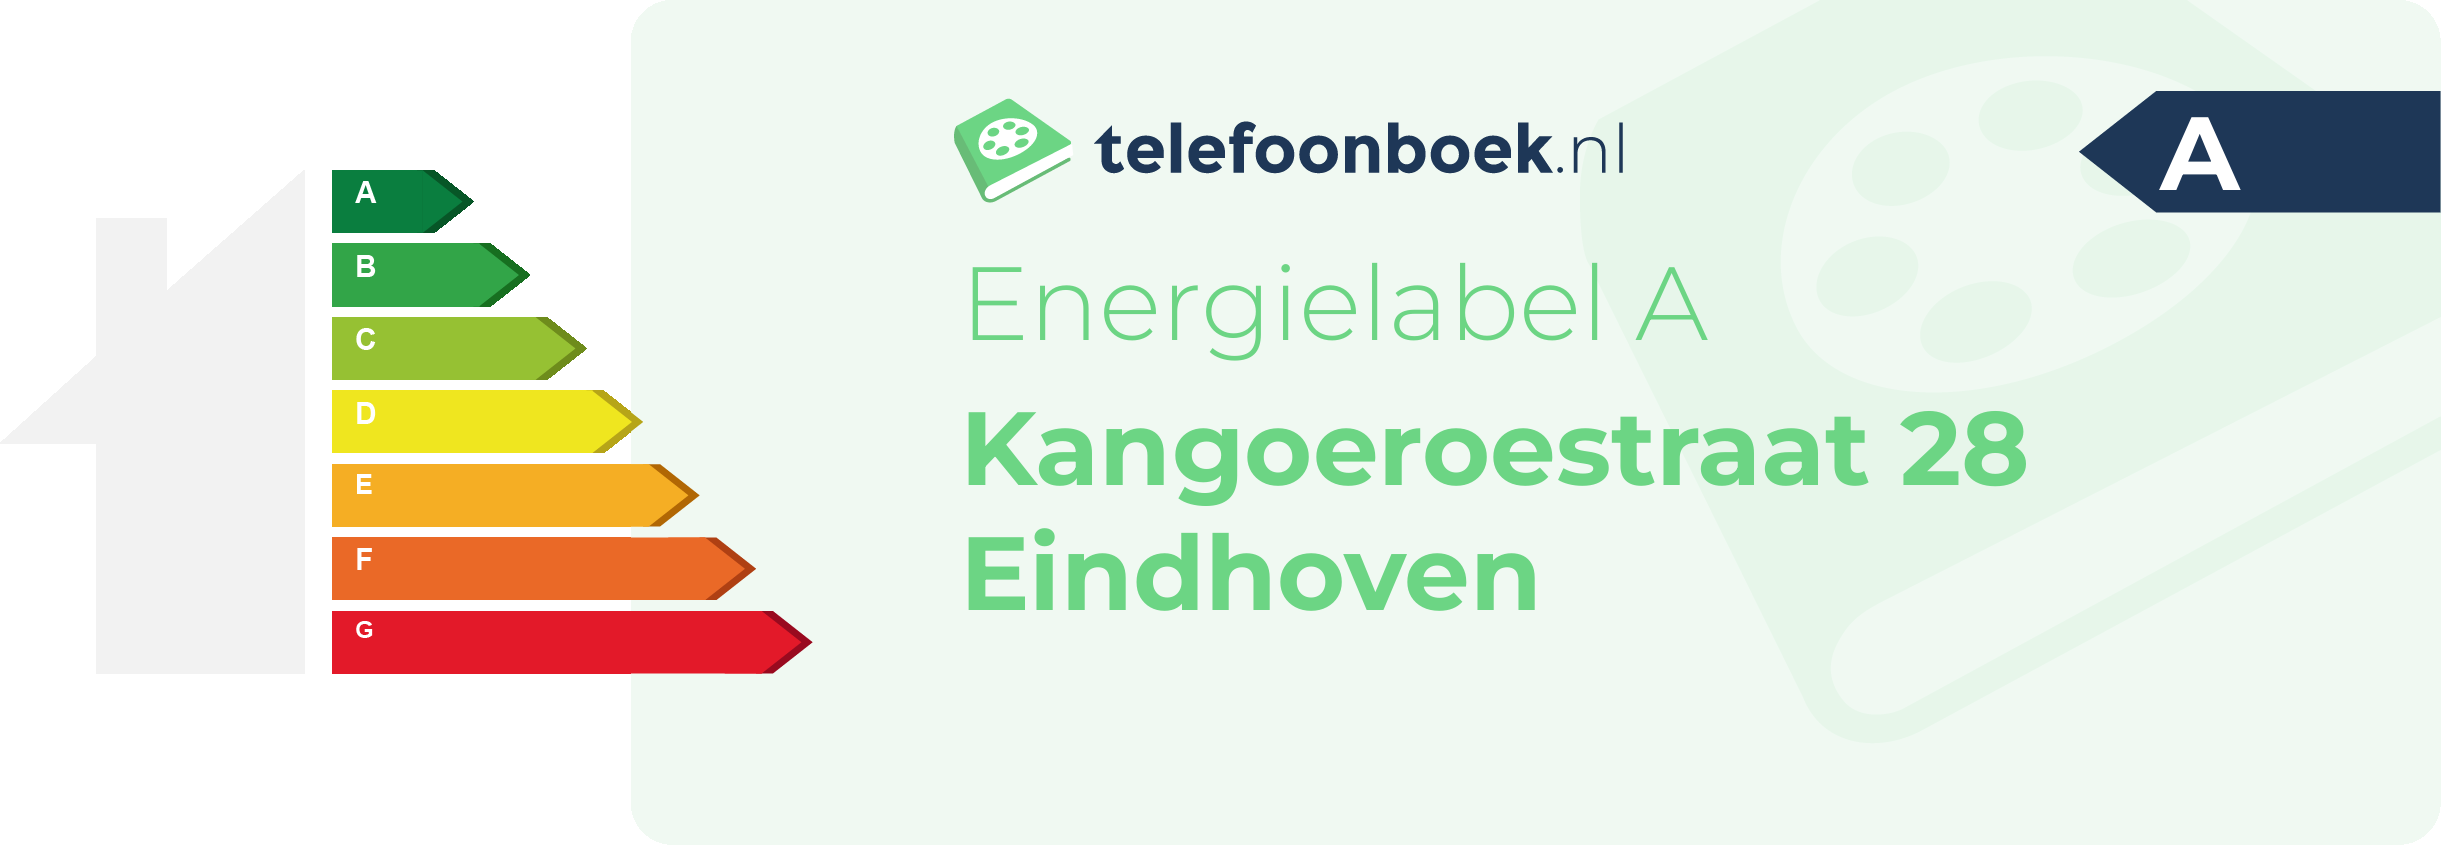 Energielabel Kangoeroestraat 28 Eindhoven